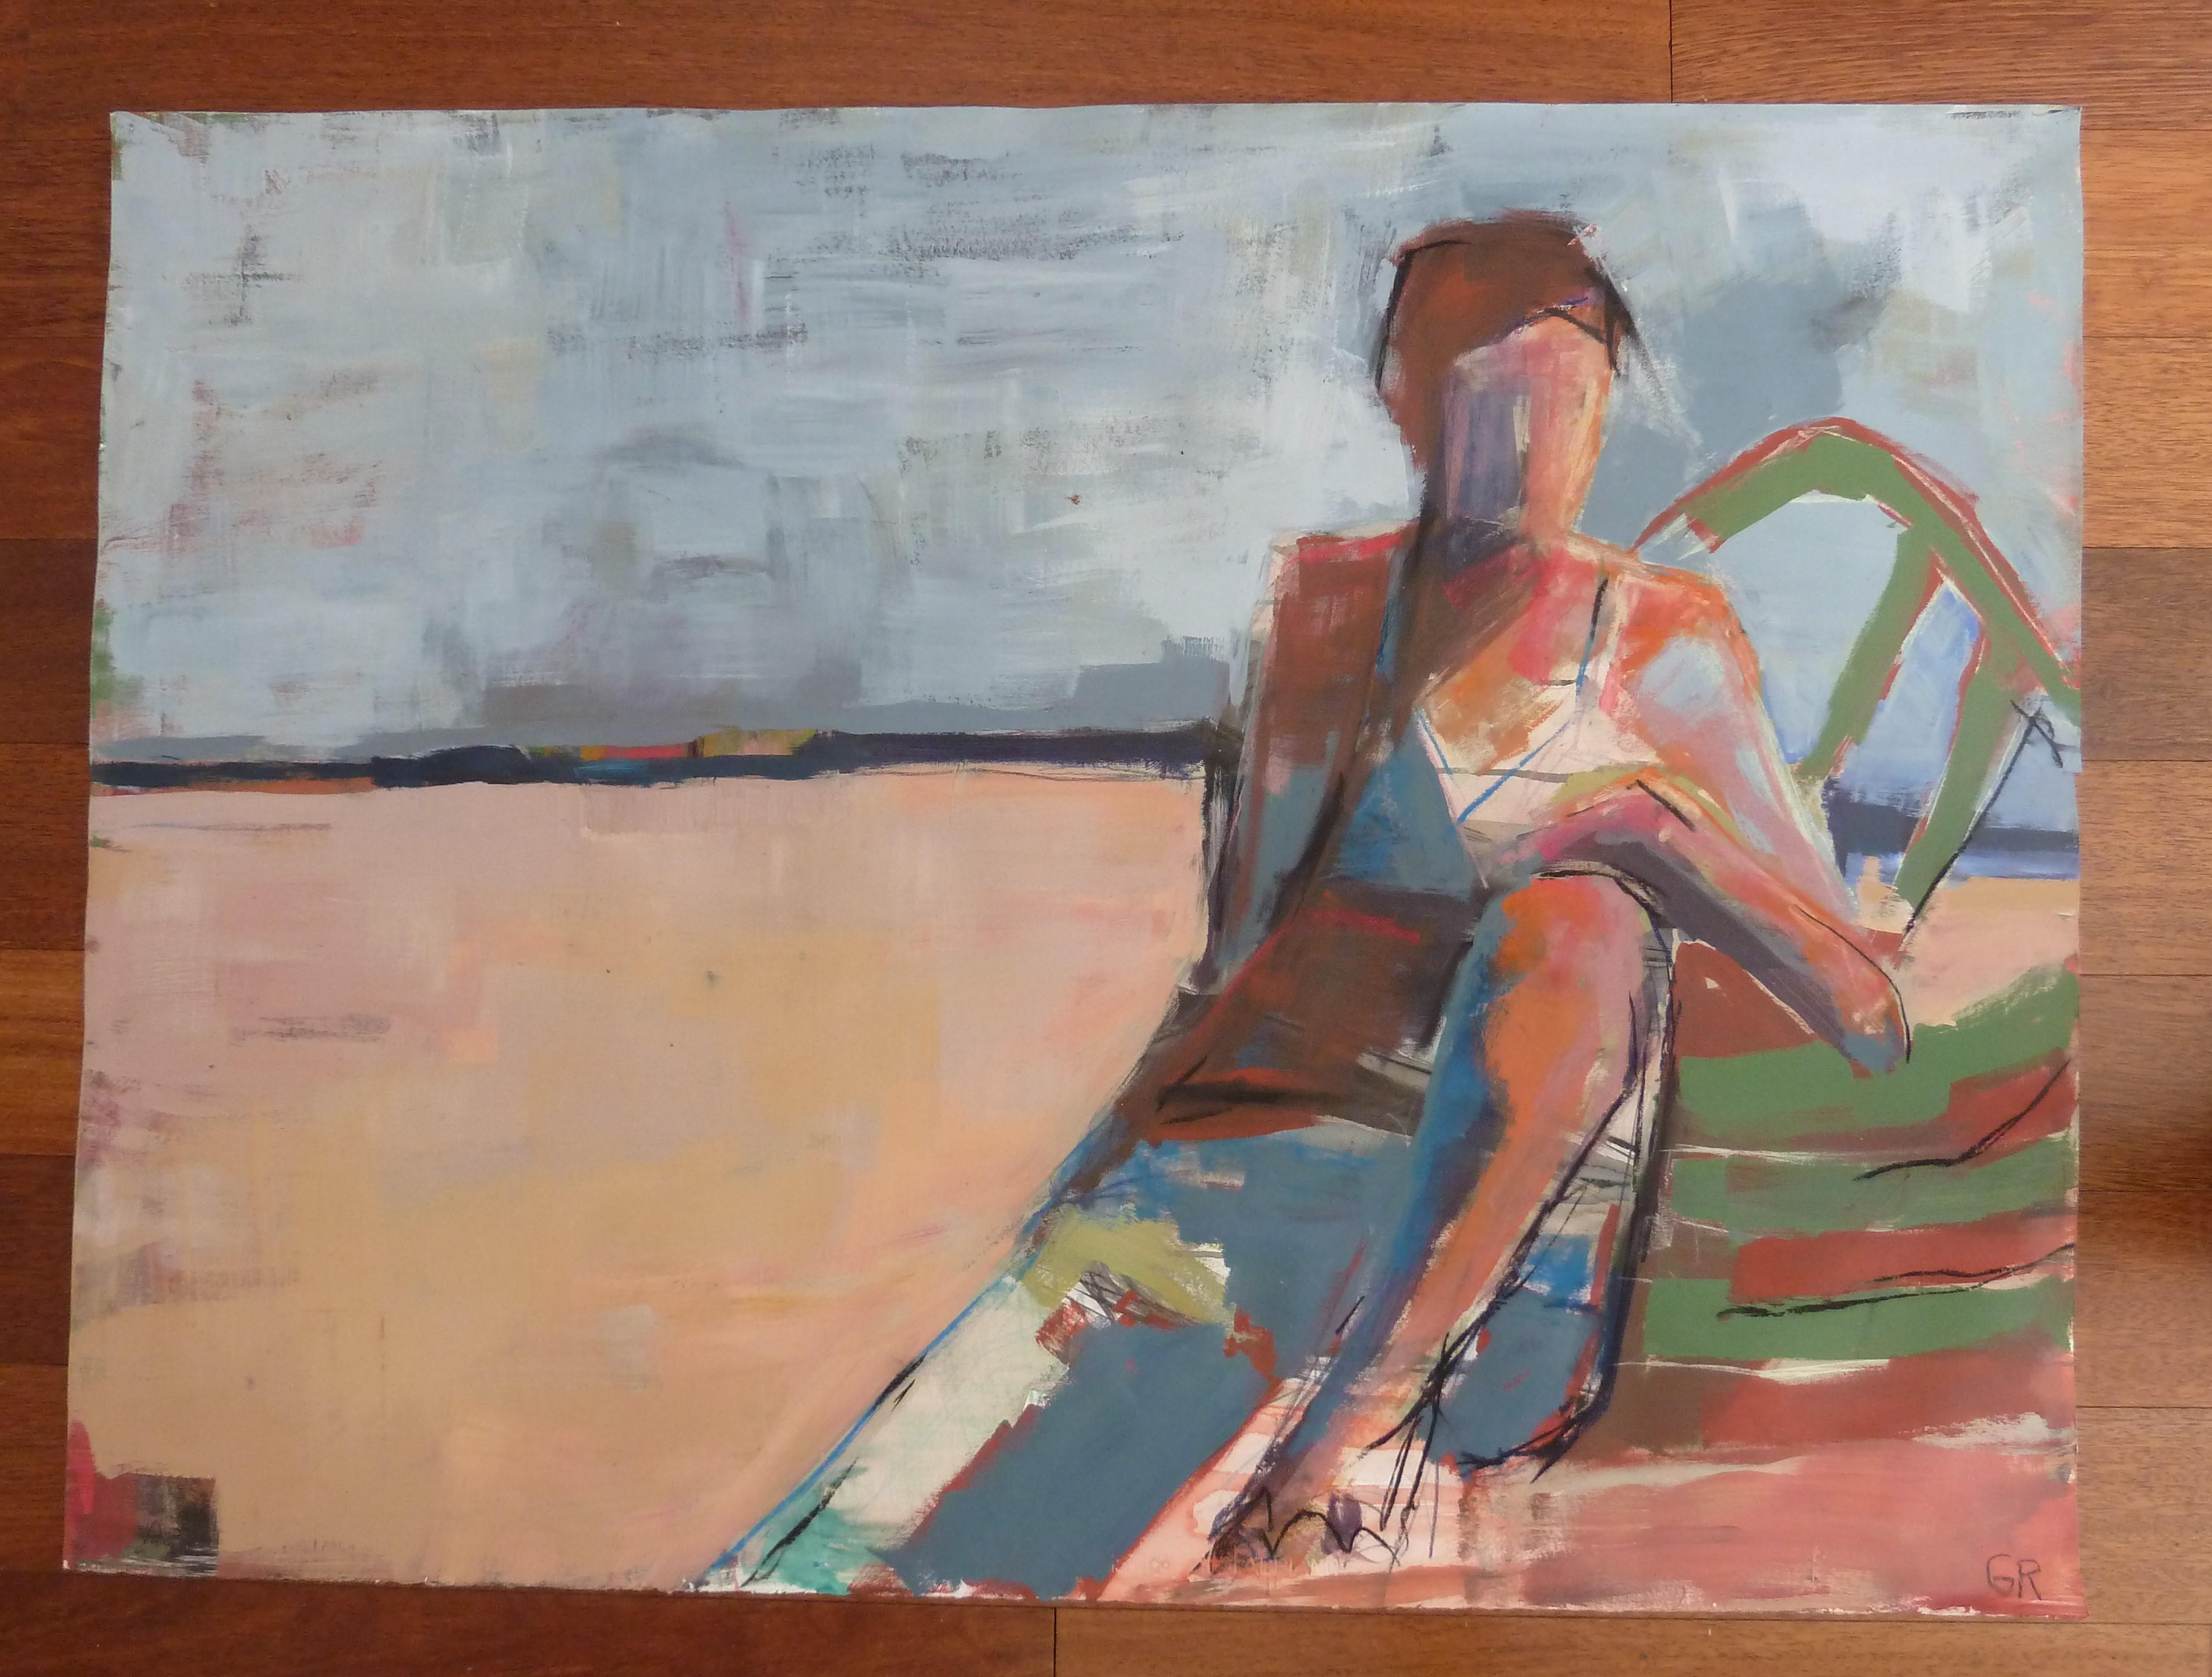 <p>Commentaires de l'artiste<br>Dans l'œuvre figurative de l'artiste Gail Ragains, une femme prend un peu de repos sur la plage. Elle s'allonge confortablement sur une chaise verte, dans un mélange de marques gestuelles au sein d'une composition